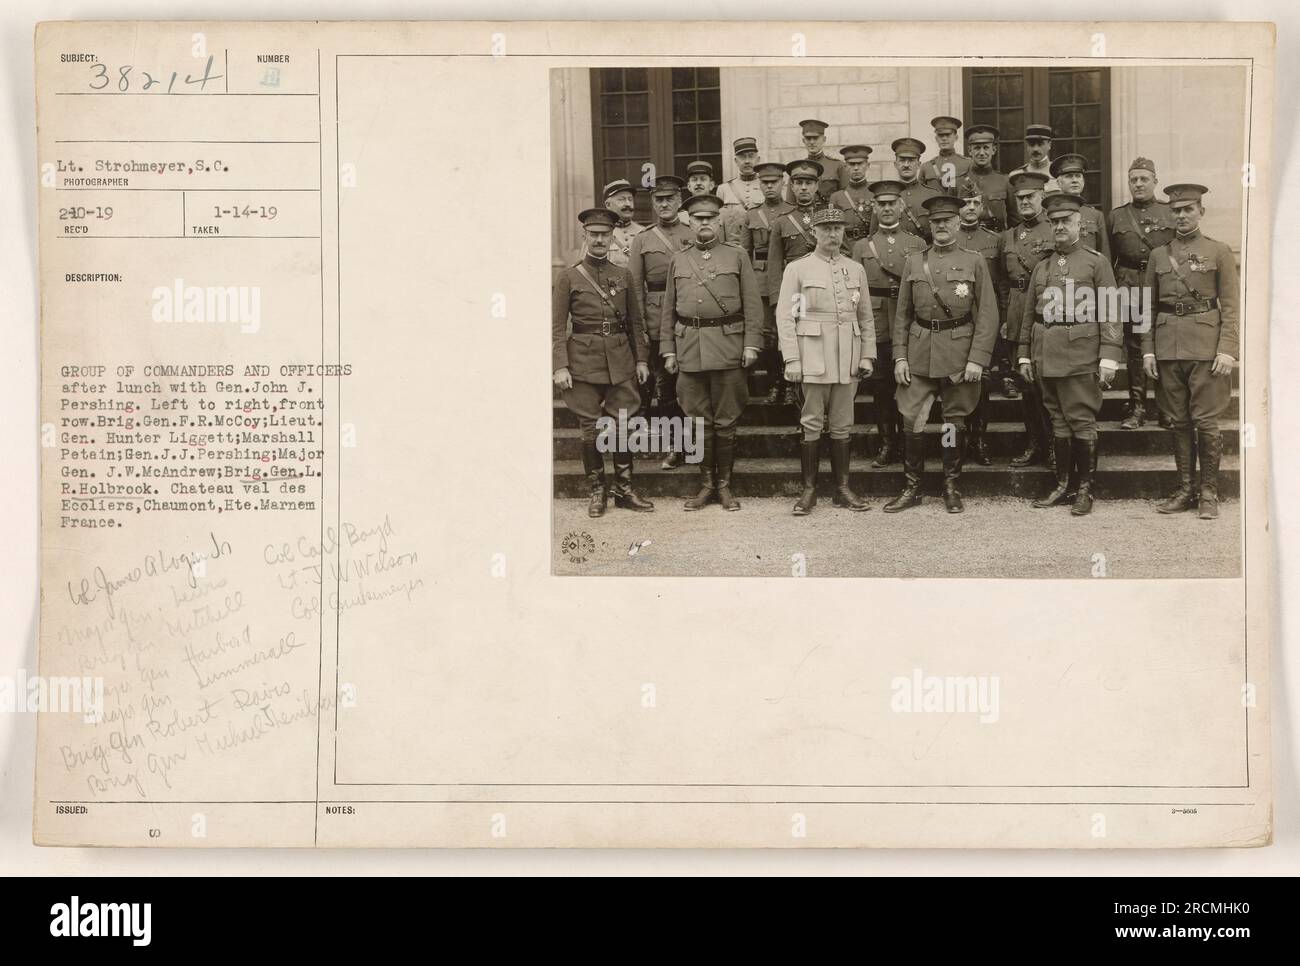 Le lieutenant Strohmeyer, S.C. a capturé une photographie pendant la première Guerre mondiale représentant un groupe de commandants et d'officiers déjeunant avec le général John J. Pershing. Les individus sur la photo, de gauche à droite dans la première rangée, comprennent Brig. Gen. F.R. McCoy, Lieut. Général Hunter Liggett, Marshall Petain, général J.J. Pershing, major général J.W. McAndrew et Brig. Général L.R. Holbrook. La photo a été prise au Château vel des Ecoliers, Chaumont, hte., Marnem, France. Banque D'Images